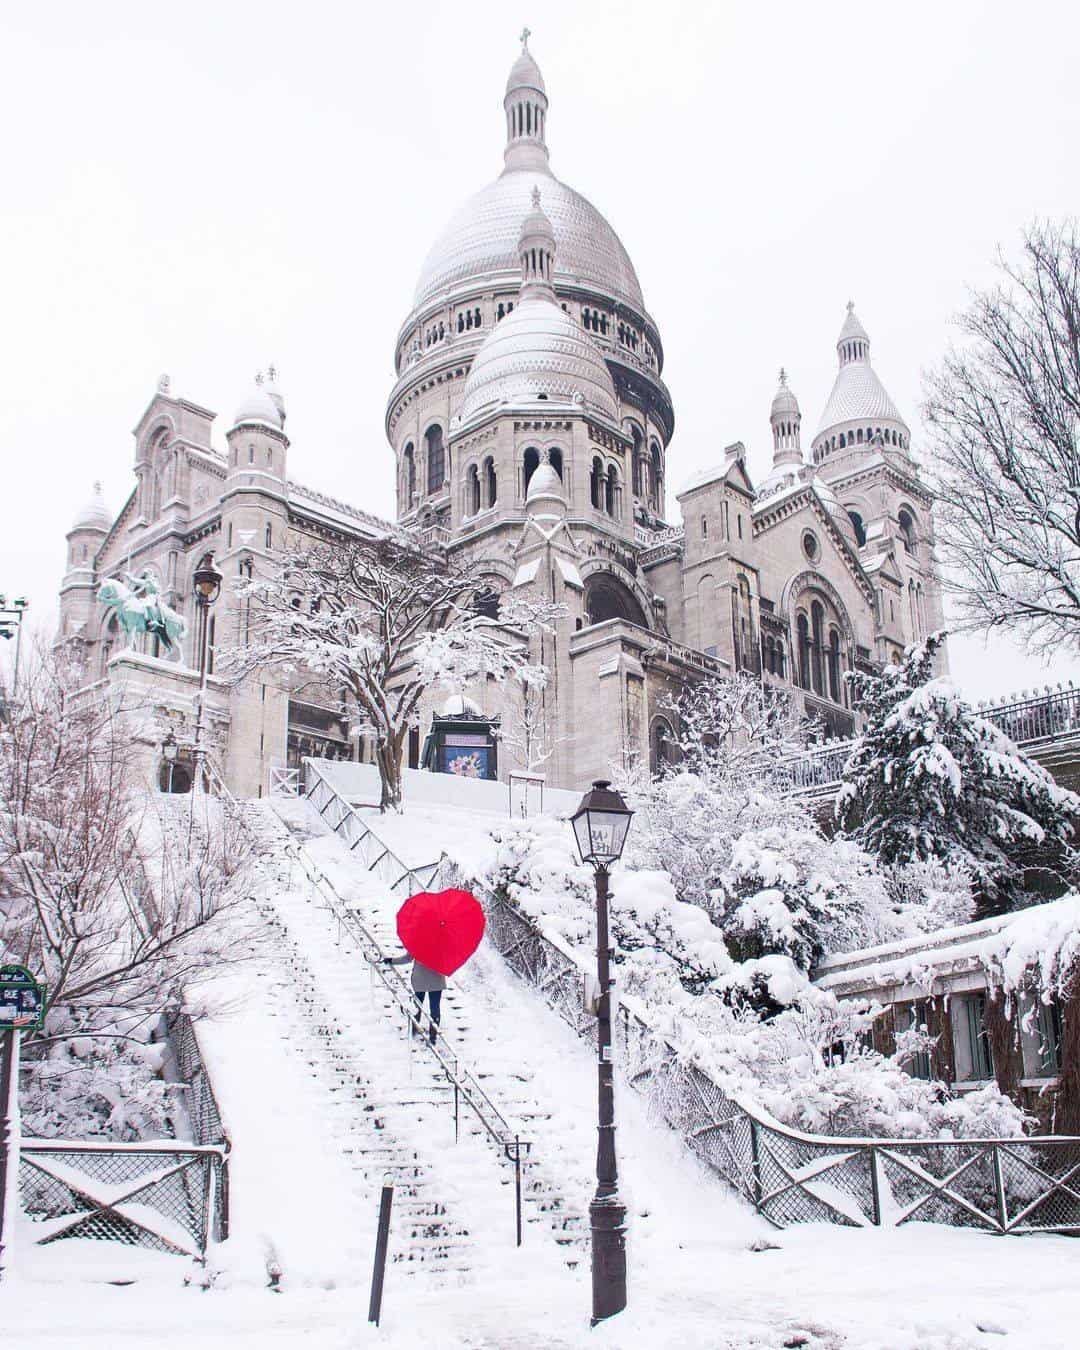 Red heart umbrella in the snow in paris